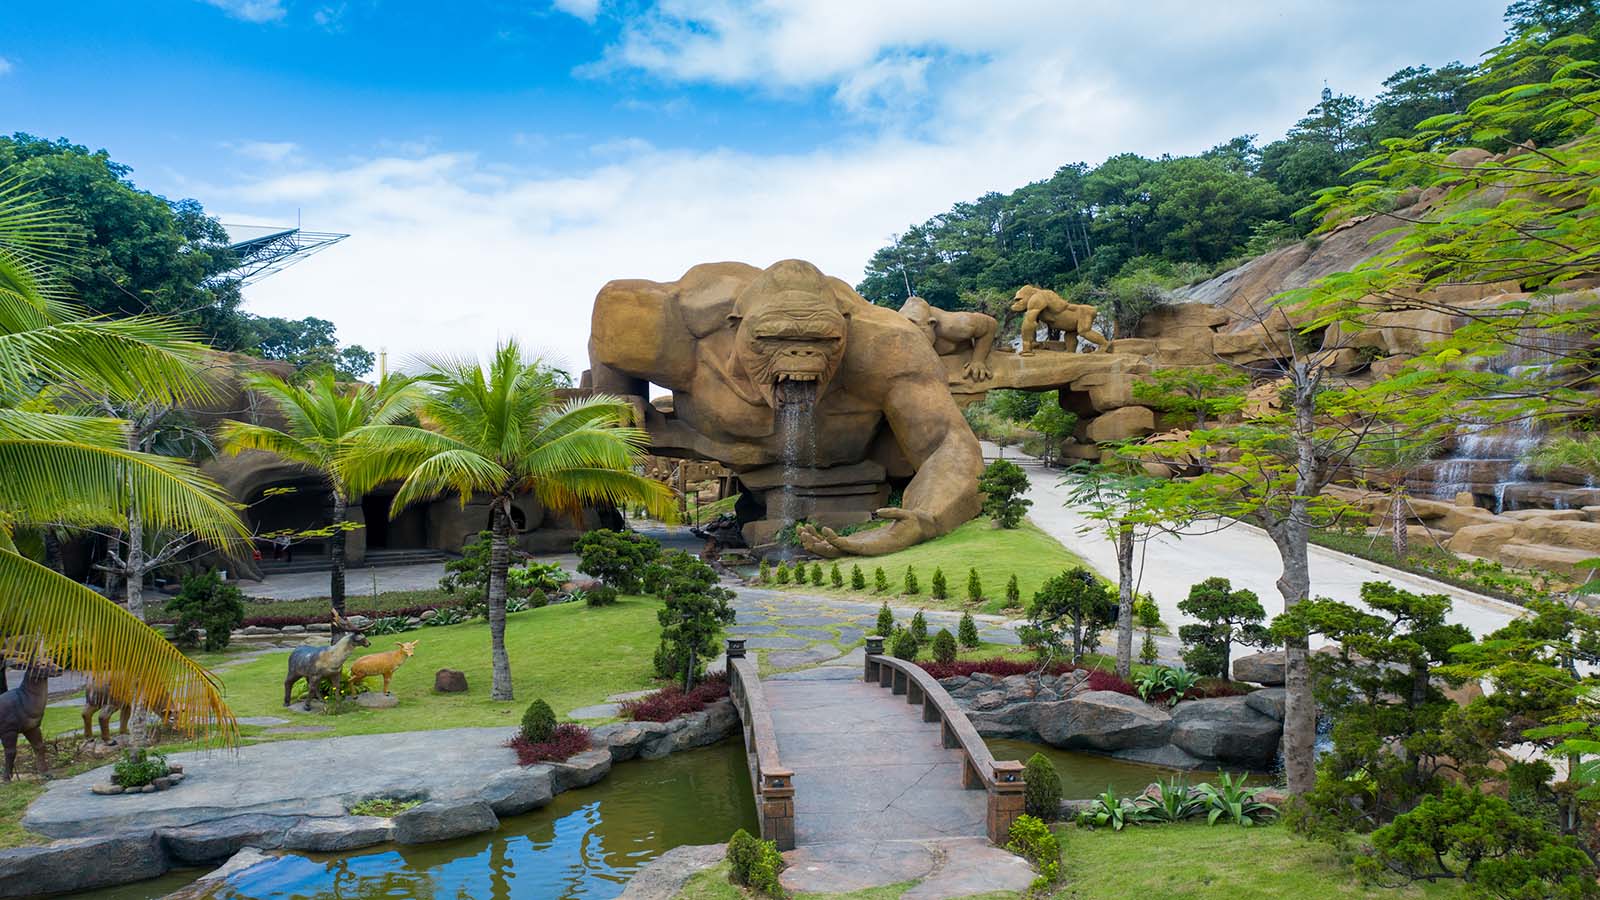 Bạn có thể tham gia rất nhiều trò chơi hấp dẫn tại công viên giải trí Tuần Châu Park